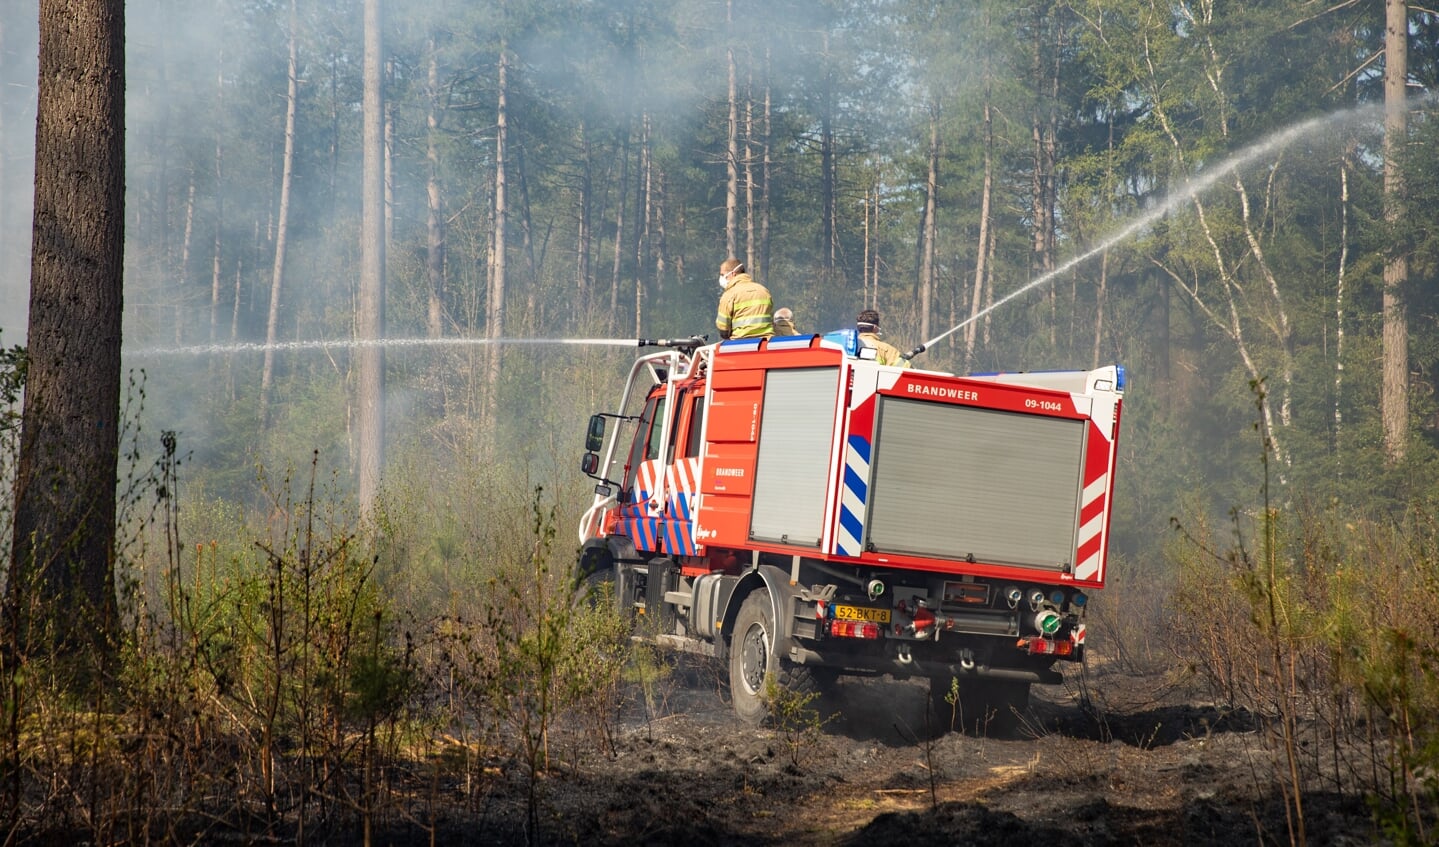 Brandweerkorps Baarn beschikt niet over een eigen natuurbrandbestrijdingsvoertuig, dit voertuig is van korps Maartensdijk.